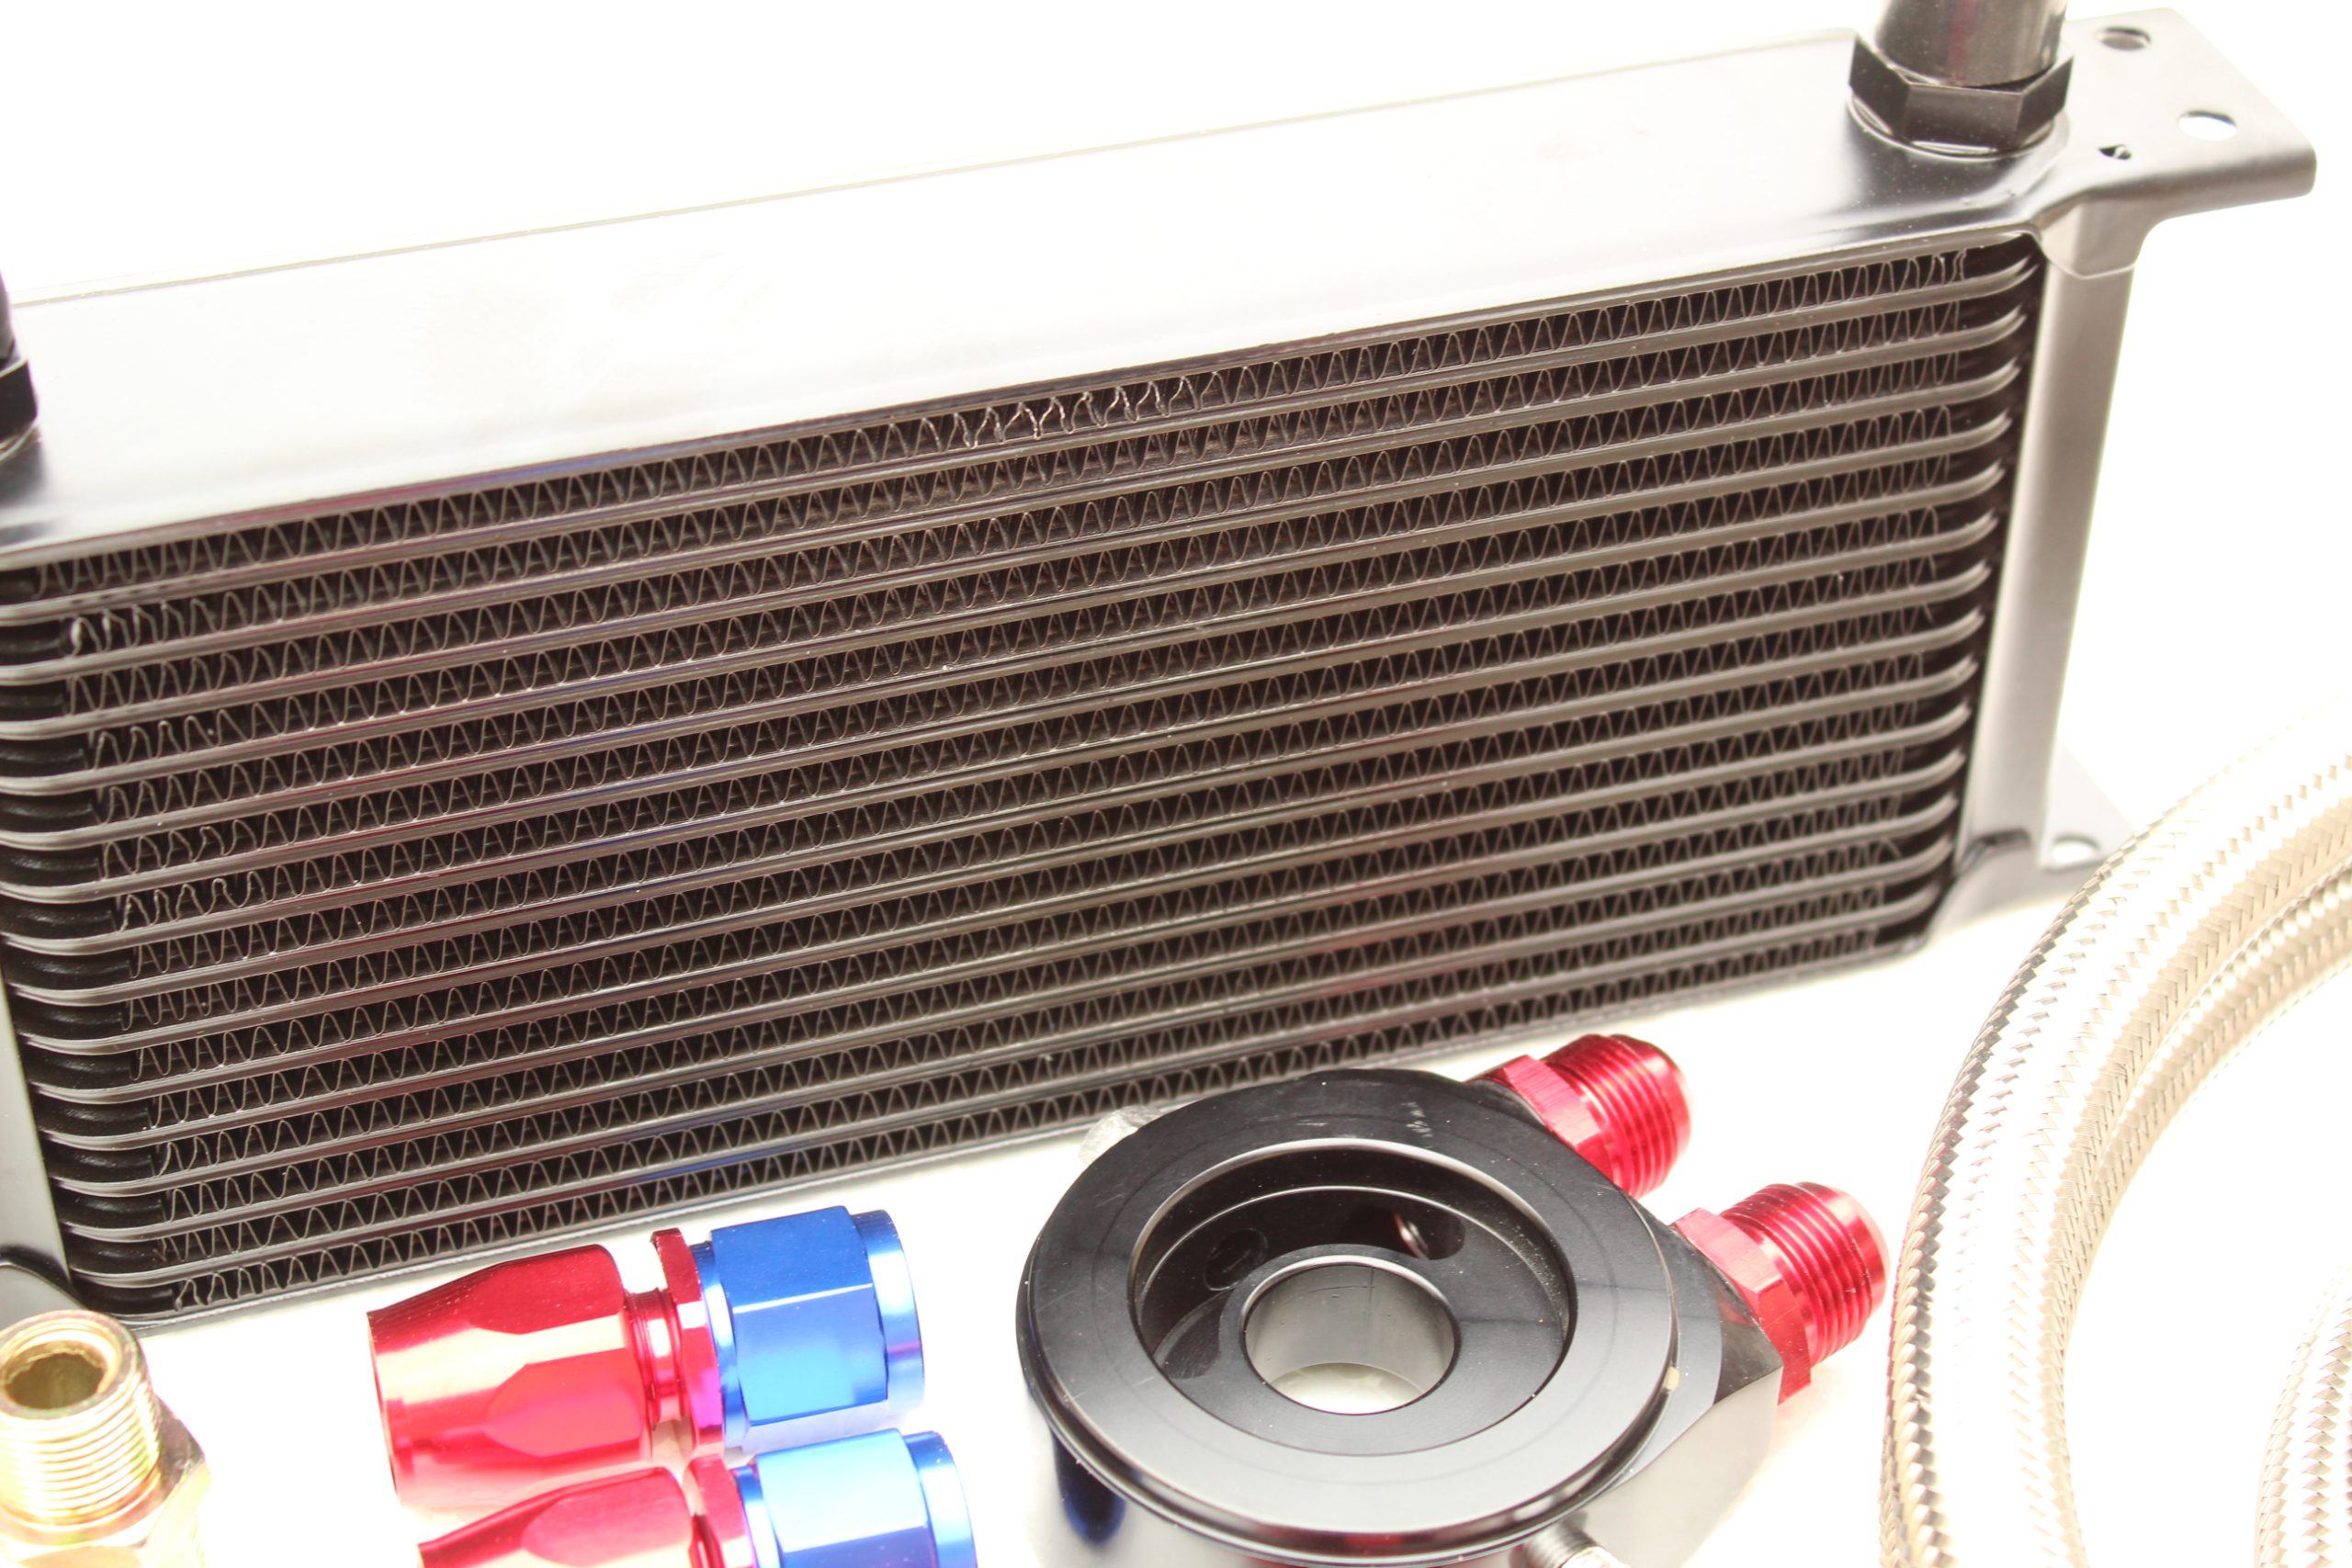 Performance 19 Row Oil Cooler Kit + HKS Filter for Nissan 350Z or 370Z V6